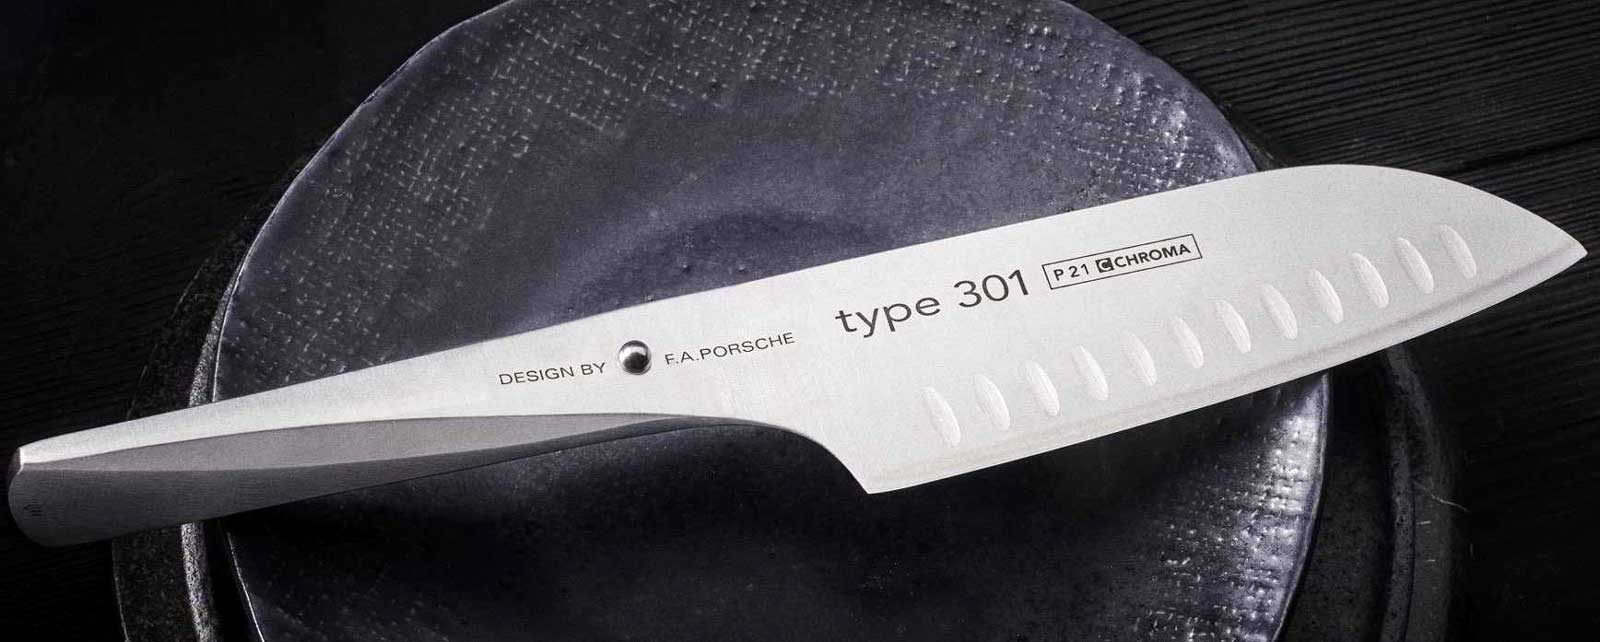 CHROMA tipus 301 - Disseny de FA Porsche - ganivet de cuiner Aquests innovadors ganivets Type 301, dissenyats per l`empresa de disseny FA Porsche, obren un nou capitol en el desenvolupament de ganivets de cuina.